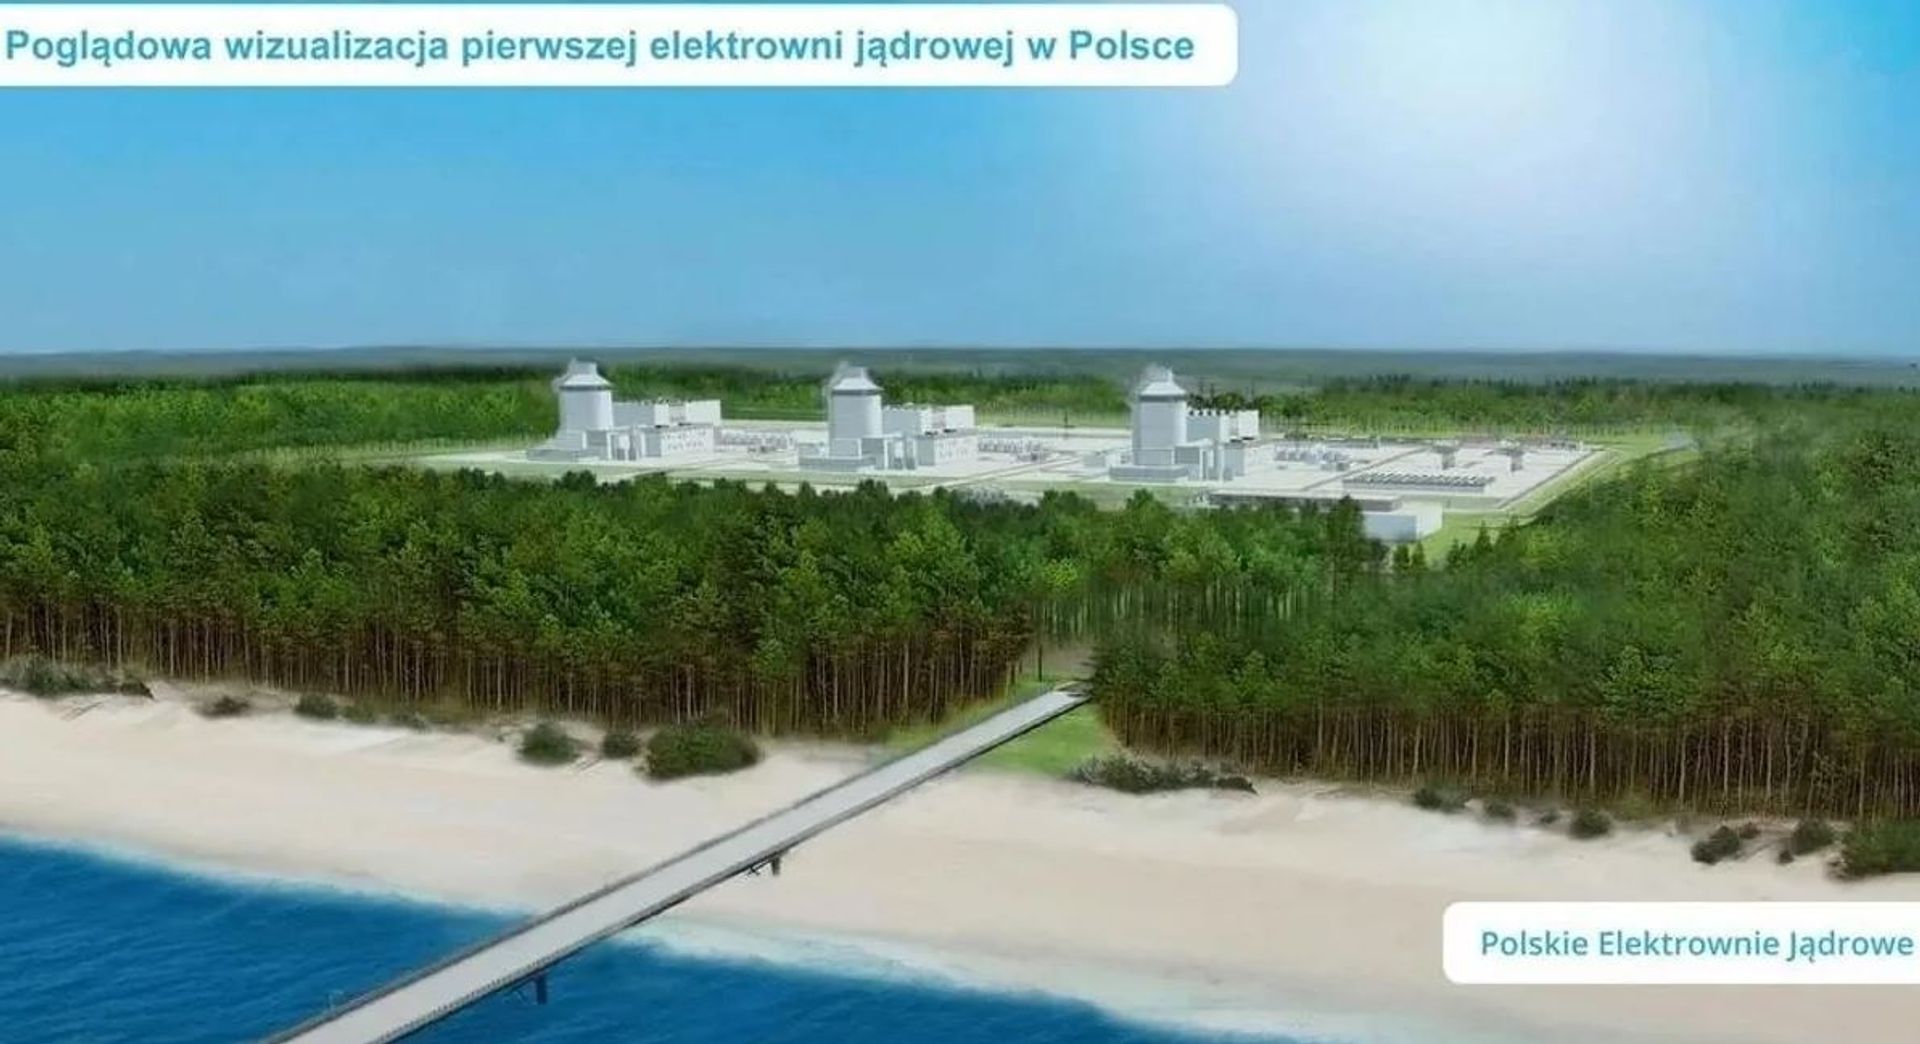 Polsko-amerykańskie rozmowy o elektrowniach jądrowych w Polsce